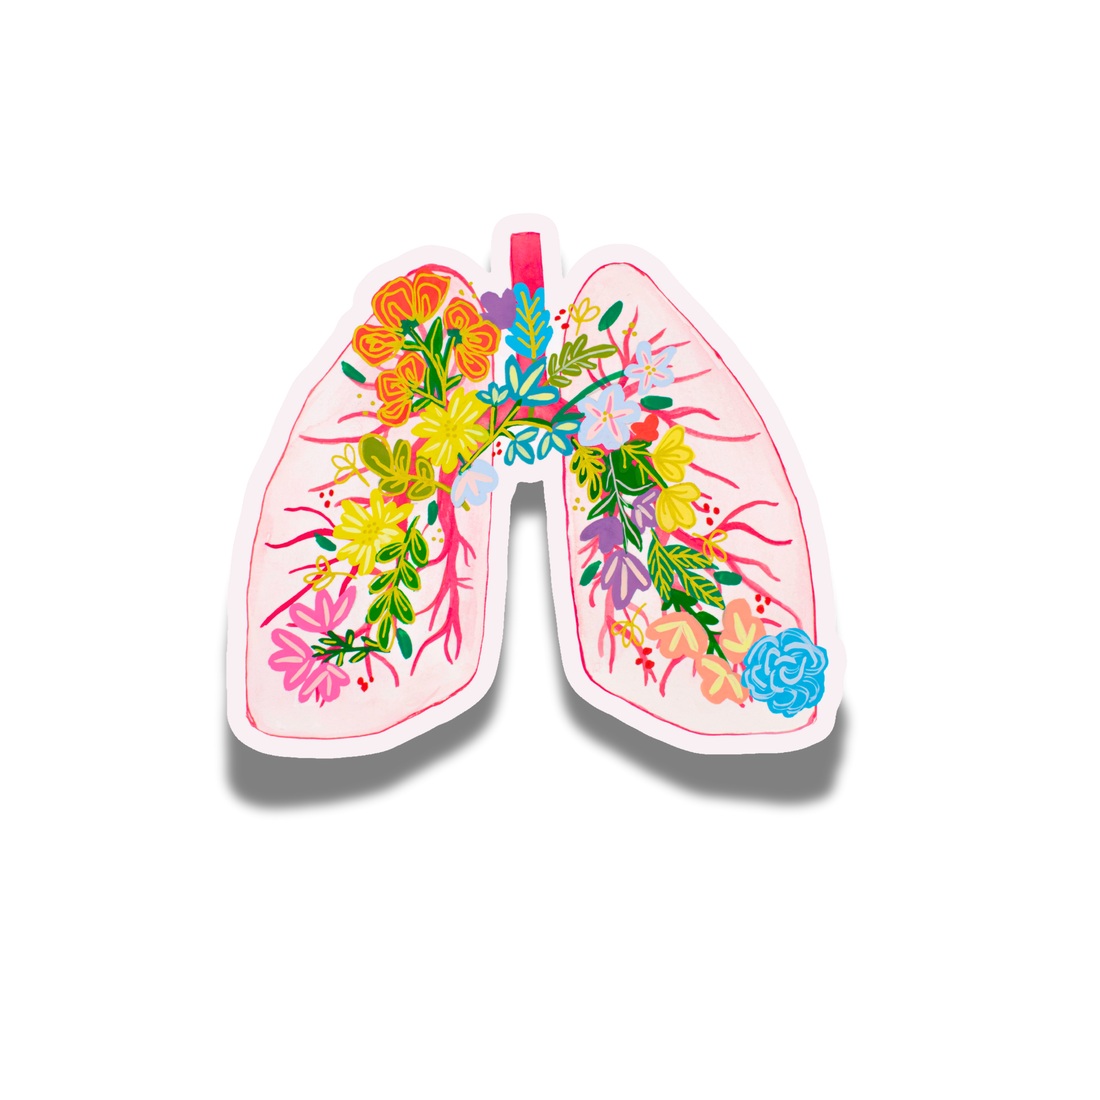 Lungs Sticker